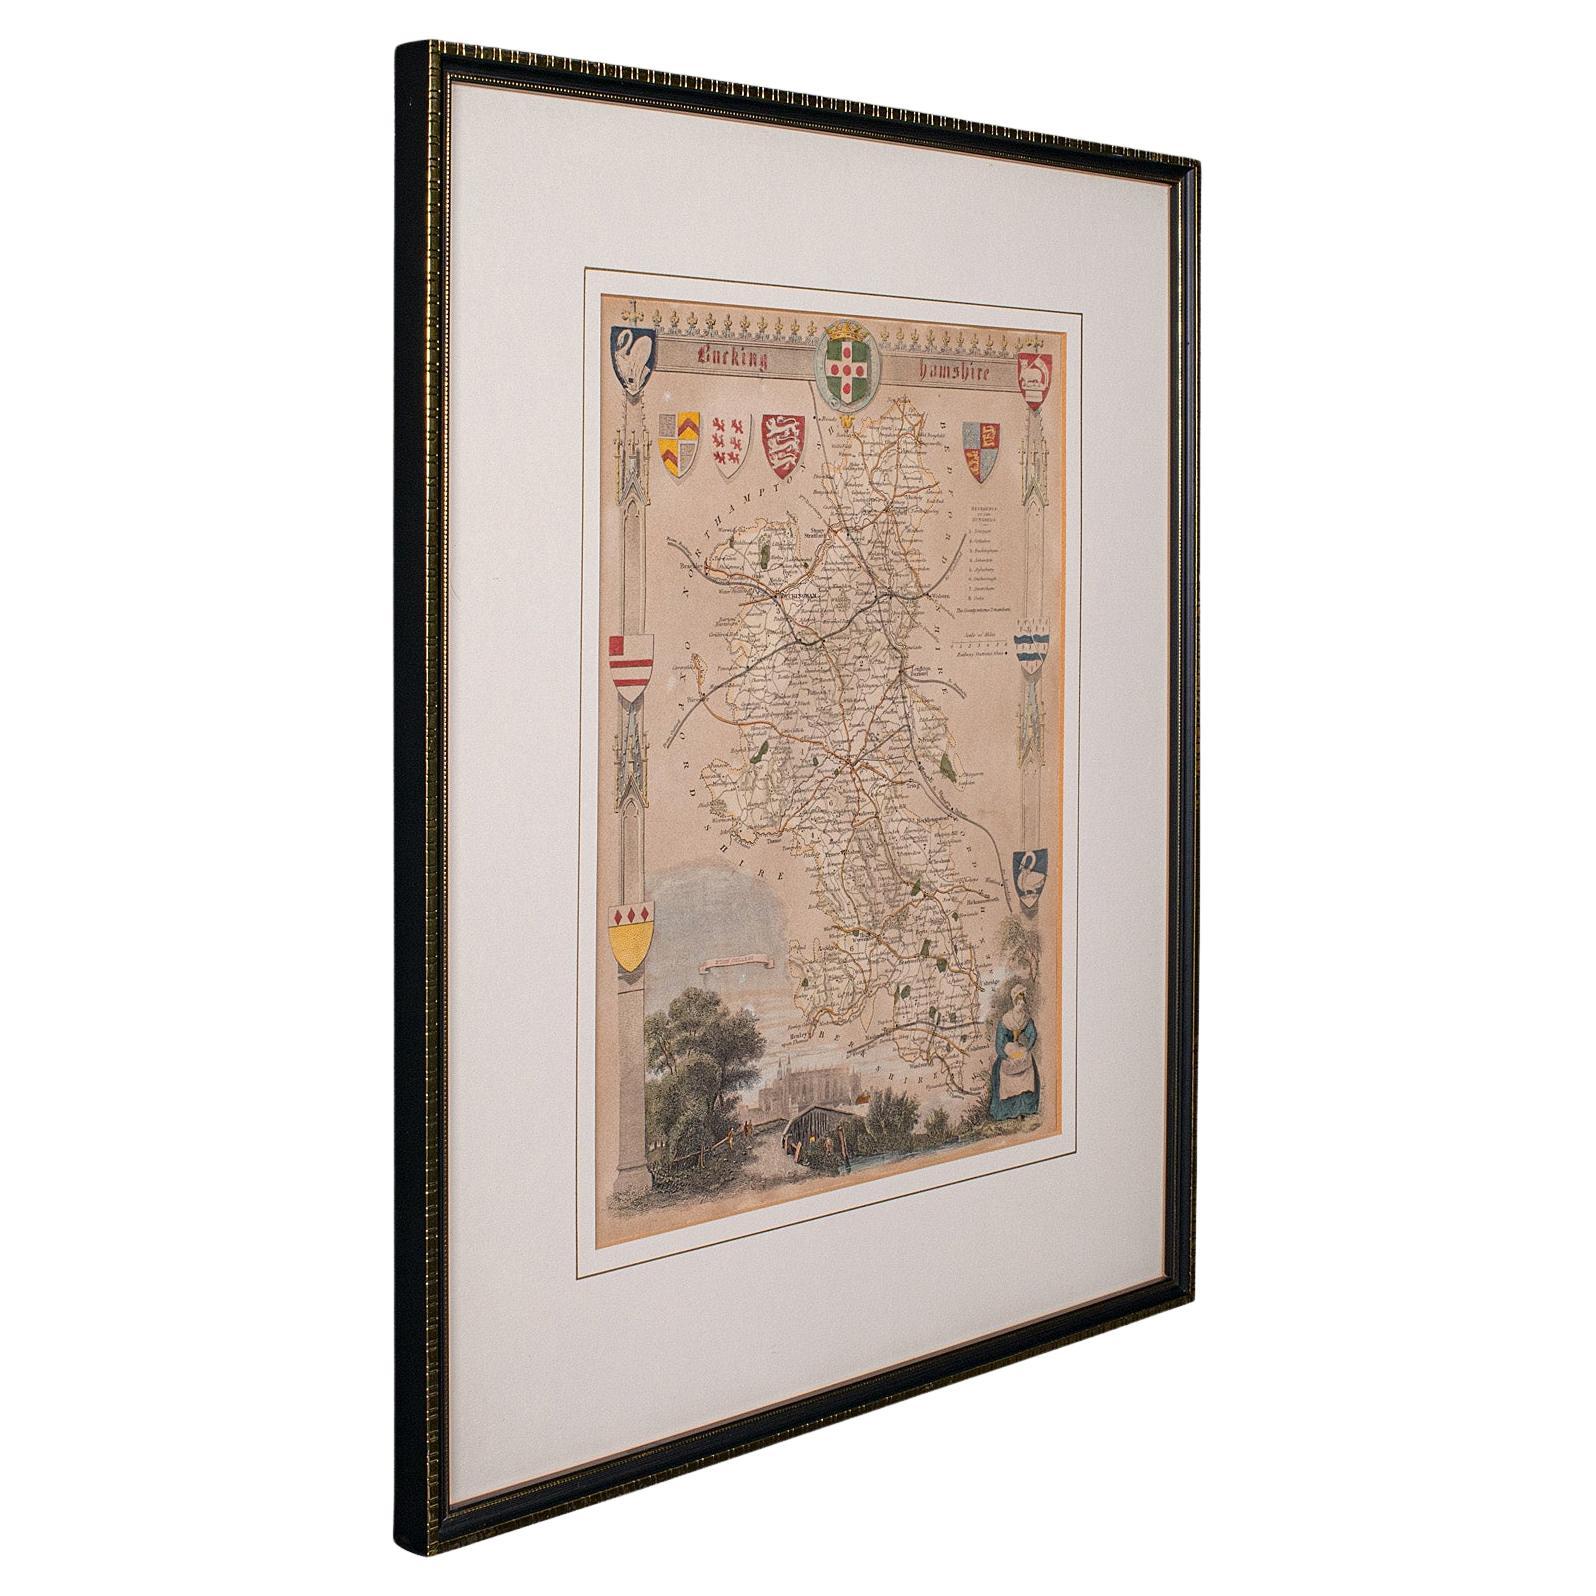 Carte lithographie ancienne, Buckinghamshire, anglaise, cartographie encadrée, victorienne